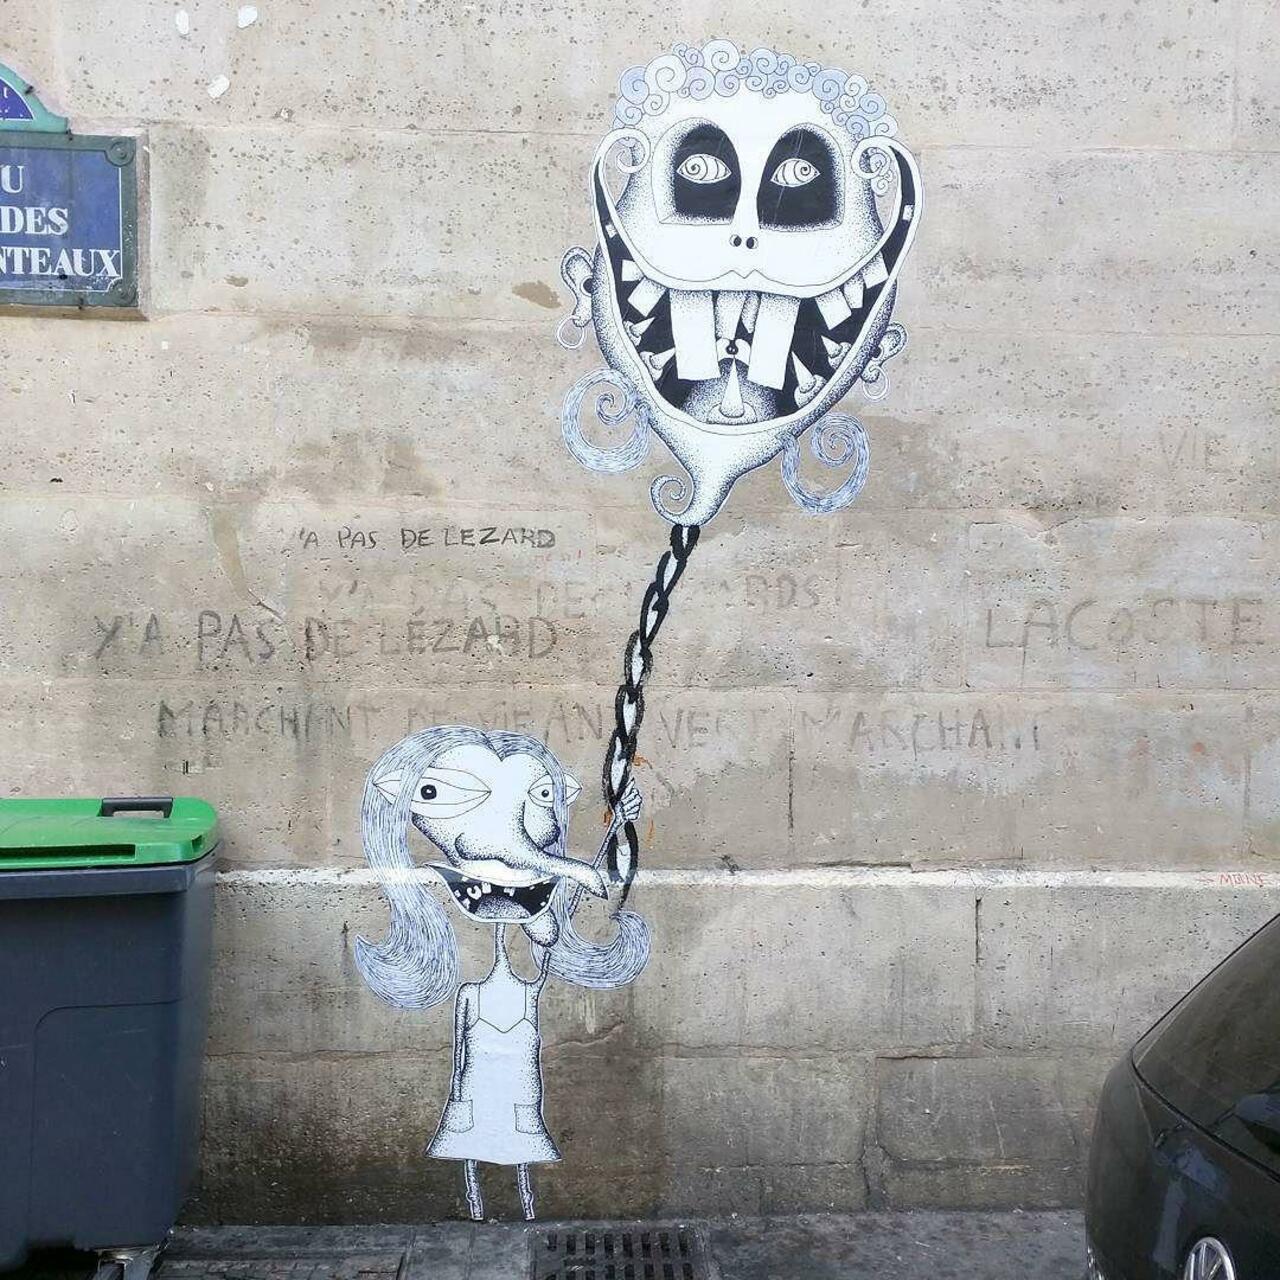 #Paris #graffiti photo by @alphaquadra http://ift.tt/1FQ5GEH #StreetArt http://t.co/TqQpyJEDSJ